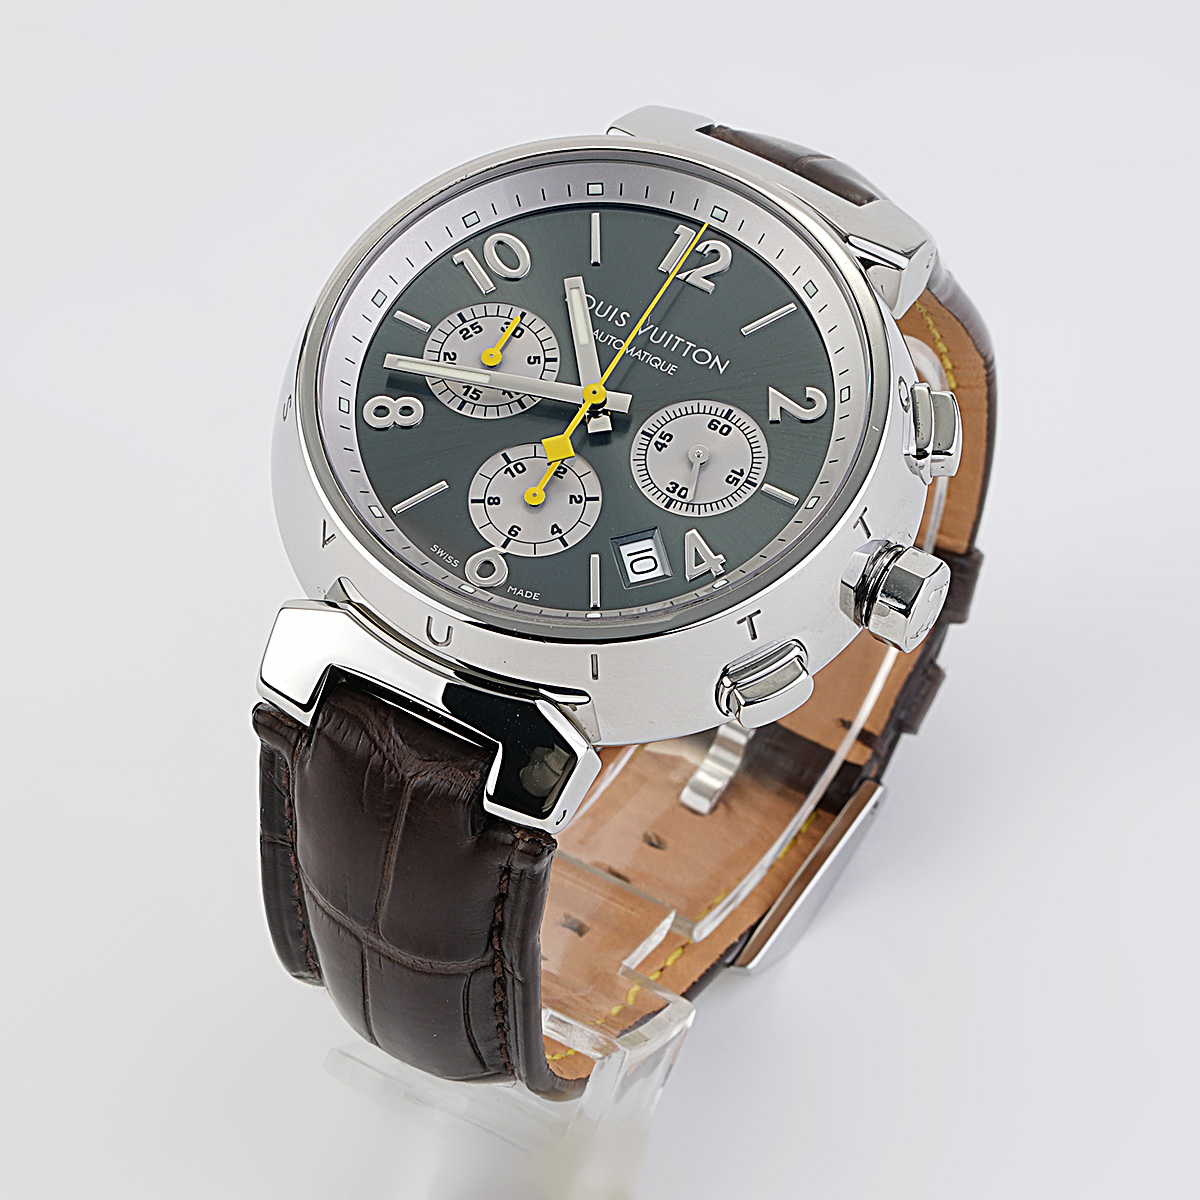 Louis Vuitton Tambour Chronograph Automatic Men's Watch